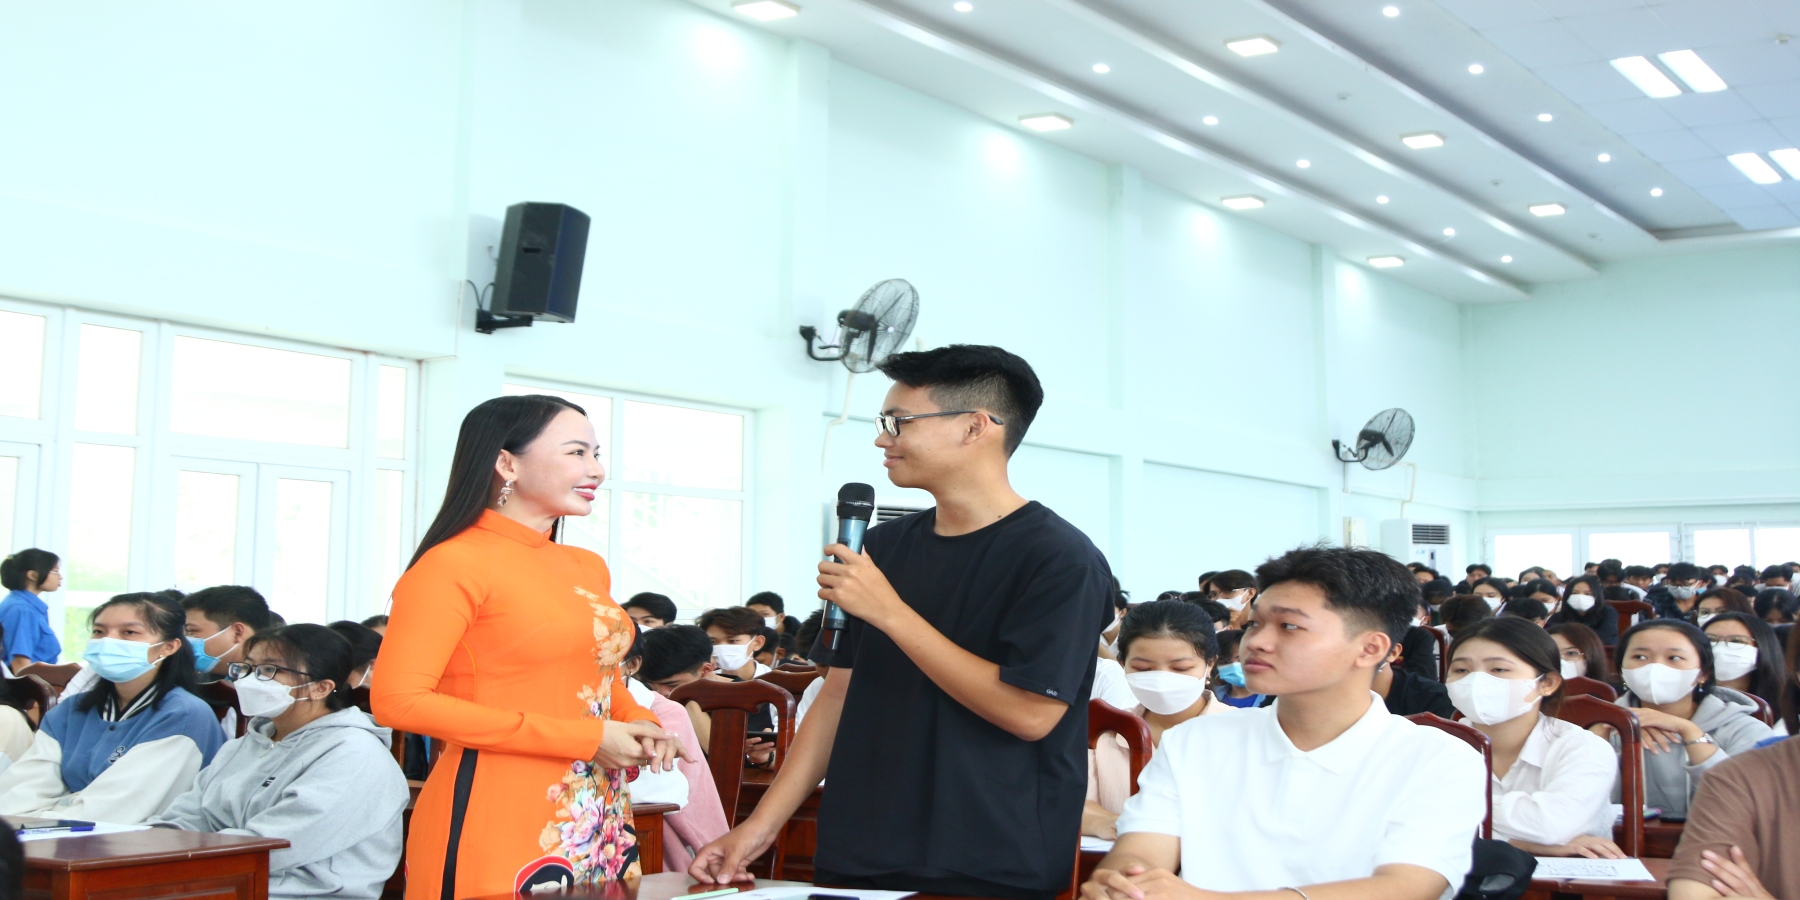 Hơn 1.000 tân sinh viên Trường Đại học Kiên Giang tham dự chương trình bồi dưỡng kỹ năng mềm đầu khóa học